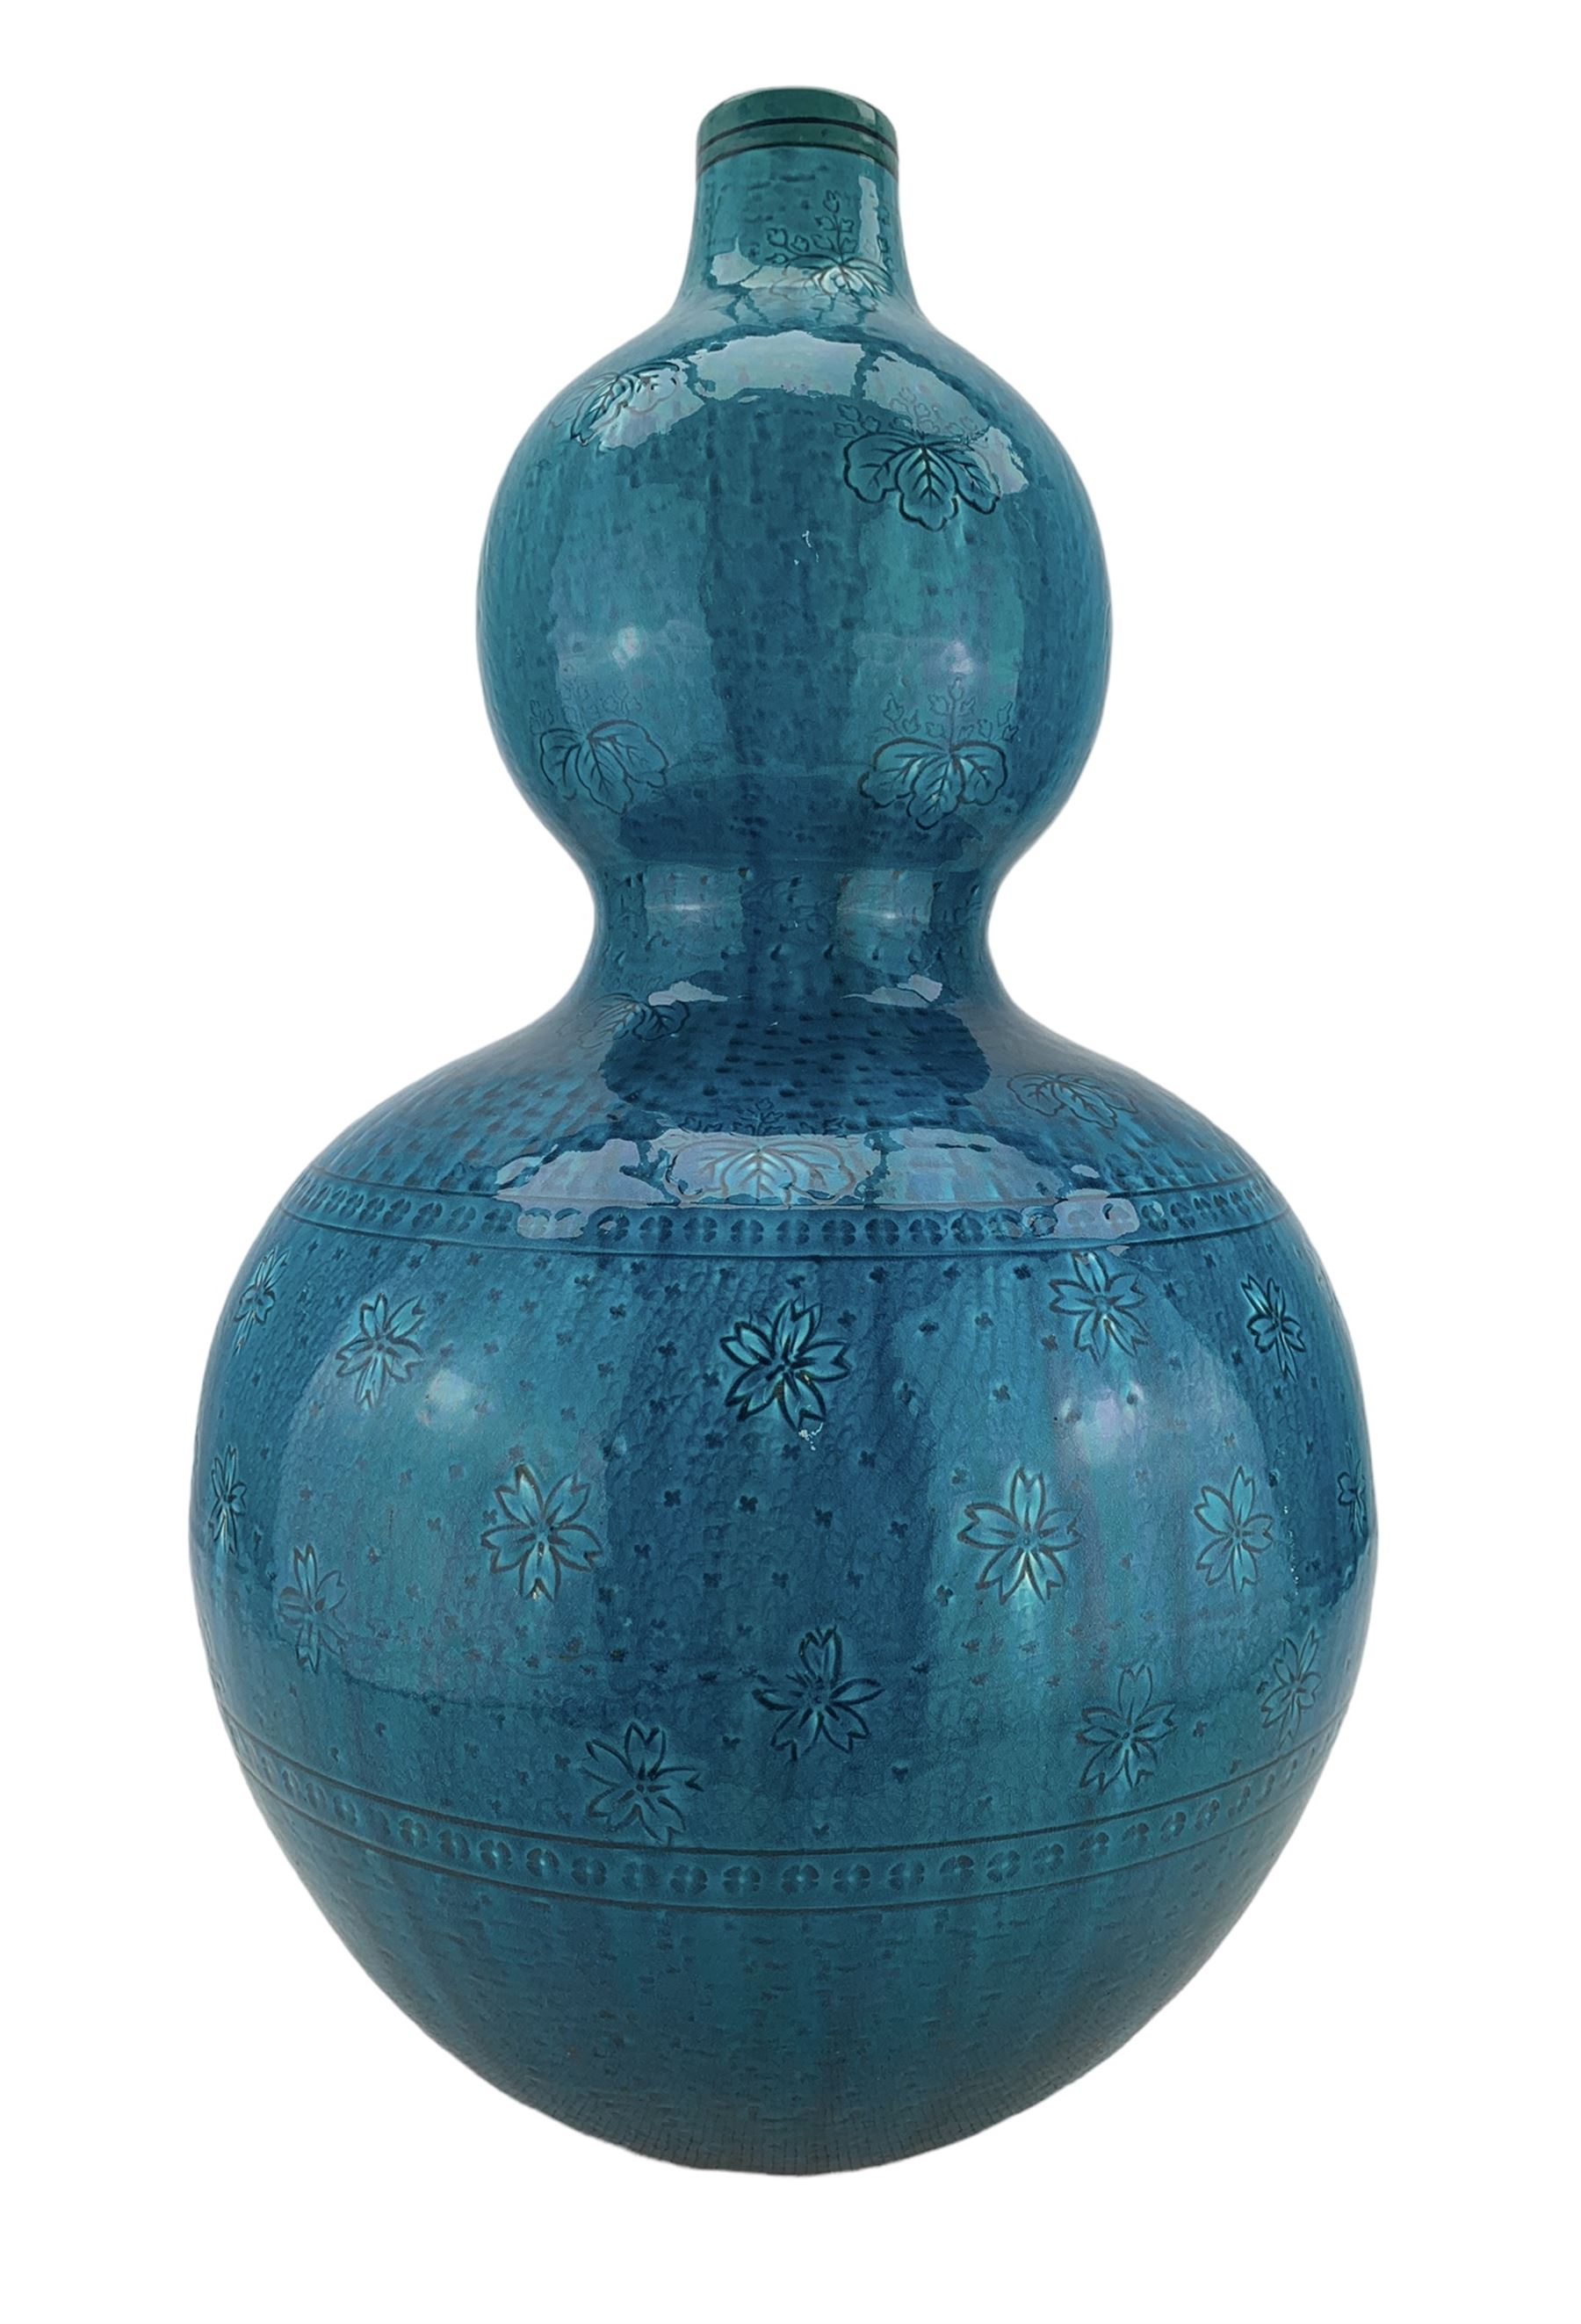 Burmantofts Faience turquoise-glaze vase - Image 2 of 4